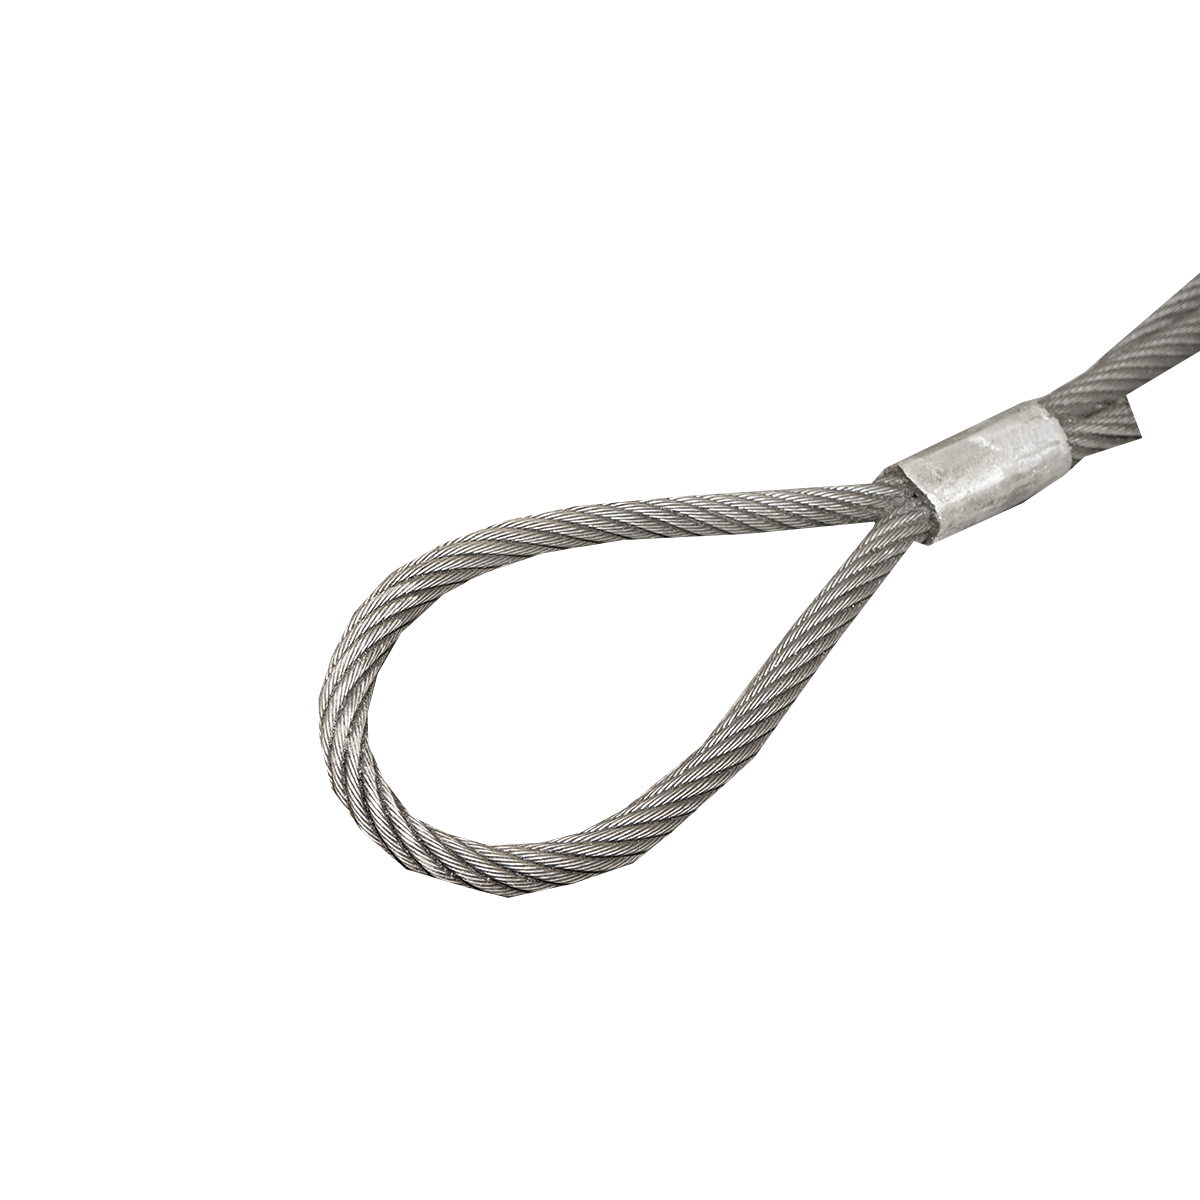 Cablu/sufa troliu din otel cu grosime de 16mm si grosime de 4m, carlig si inel pentru tractat sau ridicat